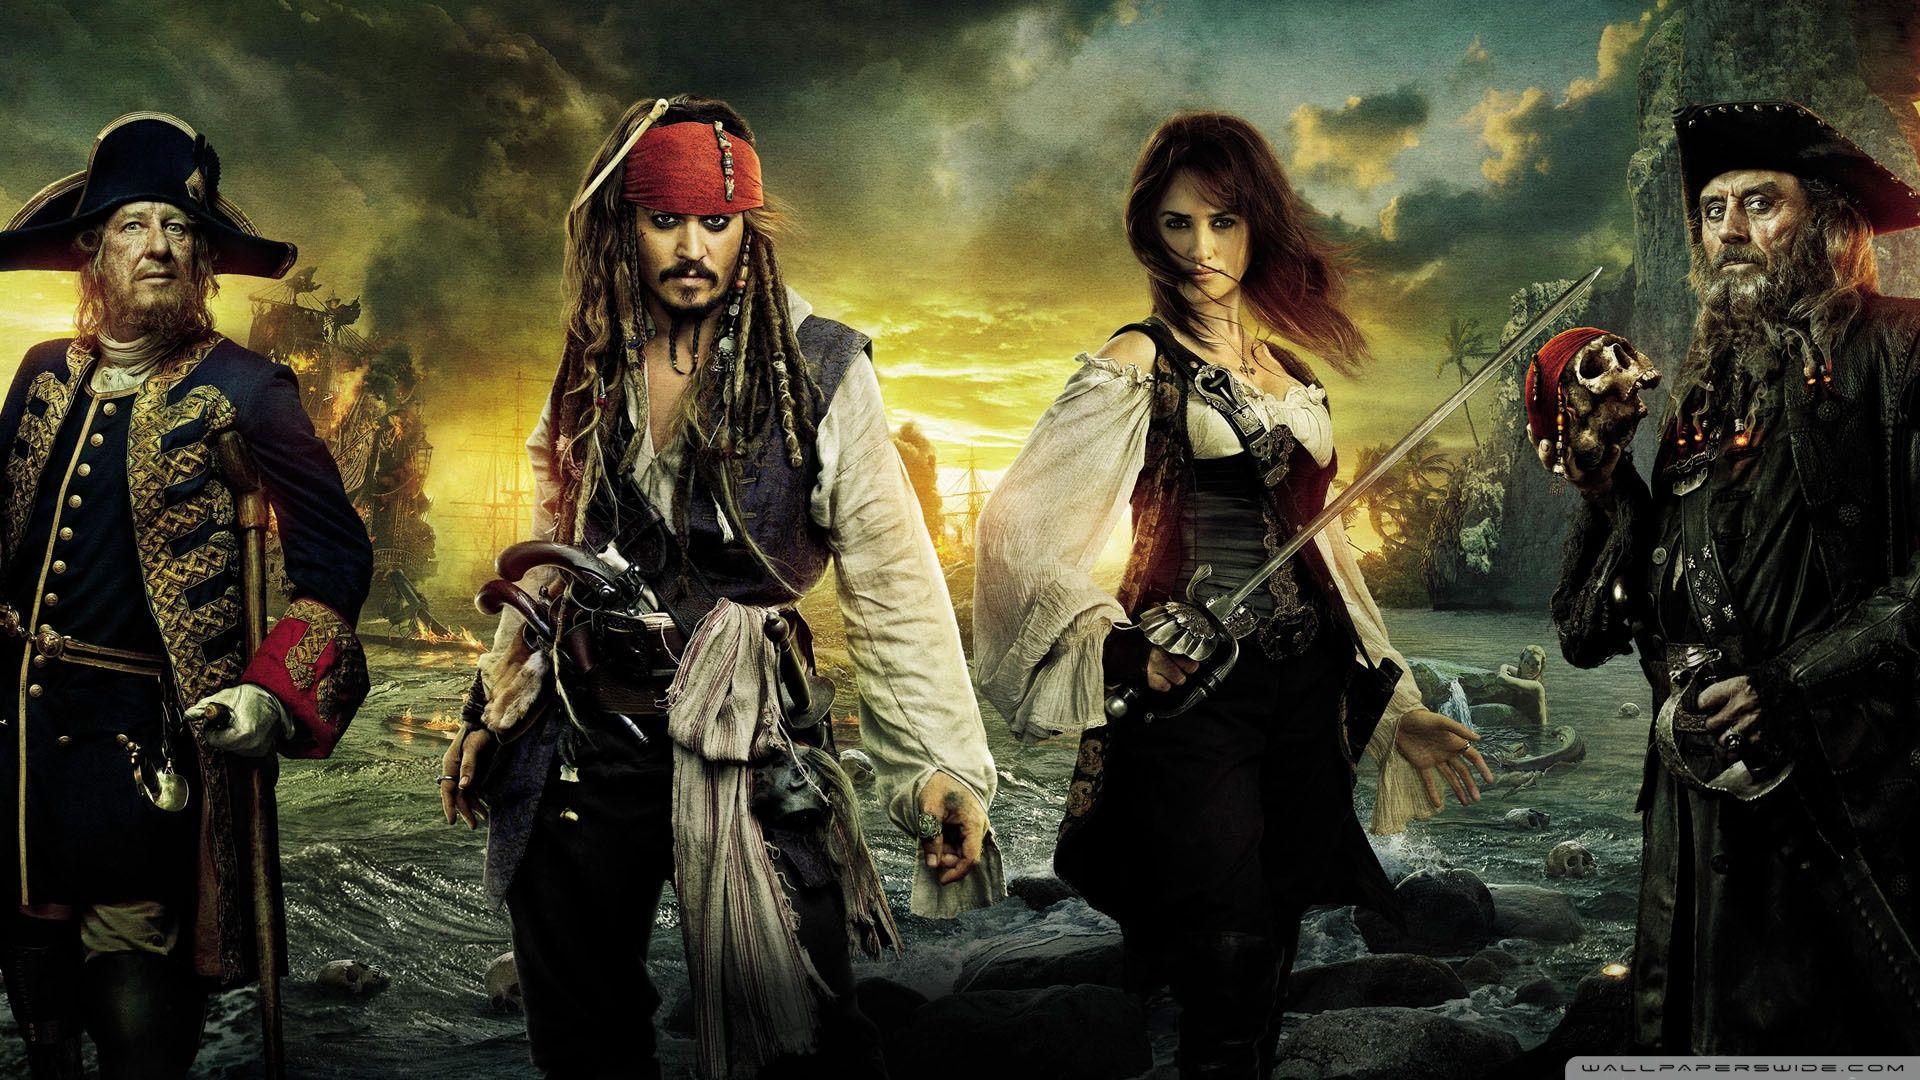 pirates stranger revenge full movie